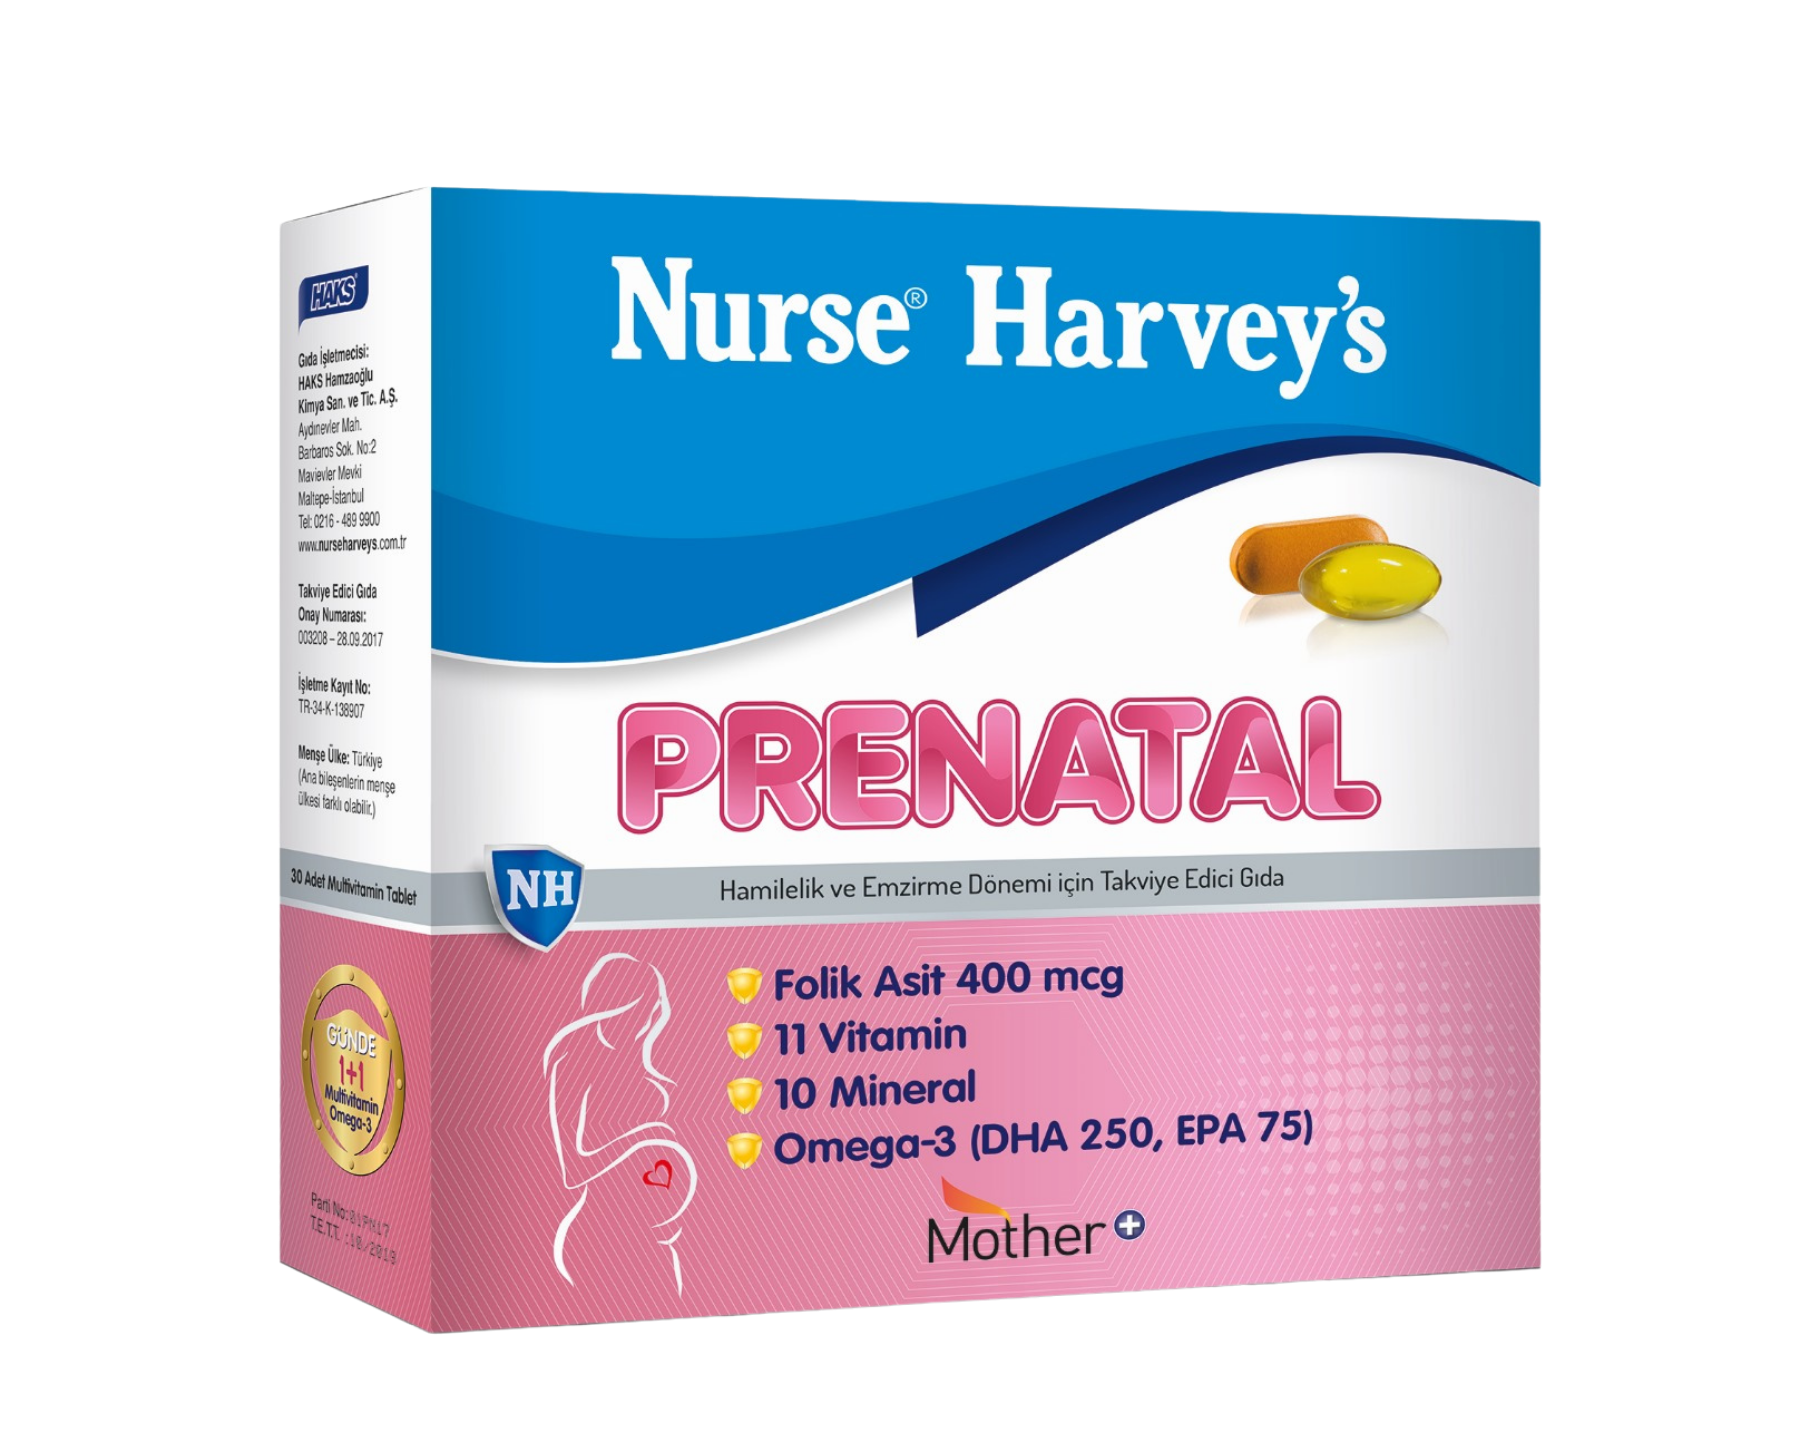 https://nurseharveys.com/nurse-harveys-prenatal/